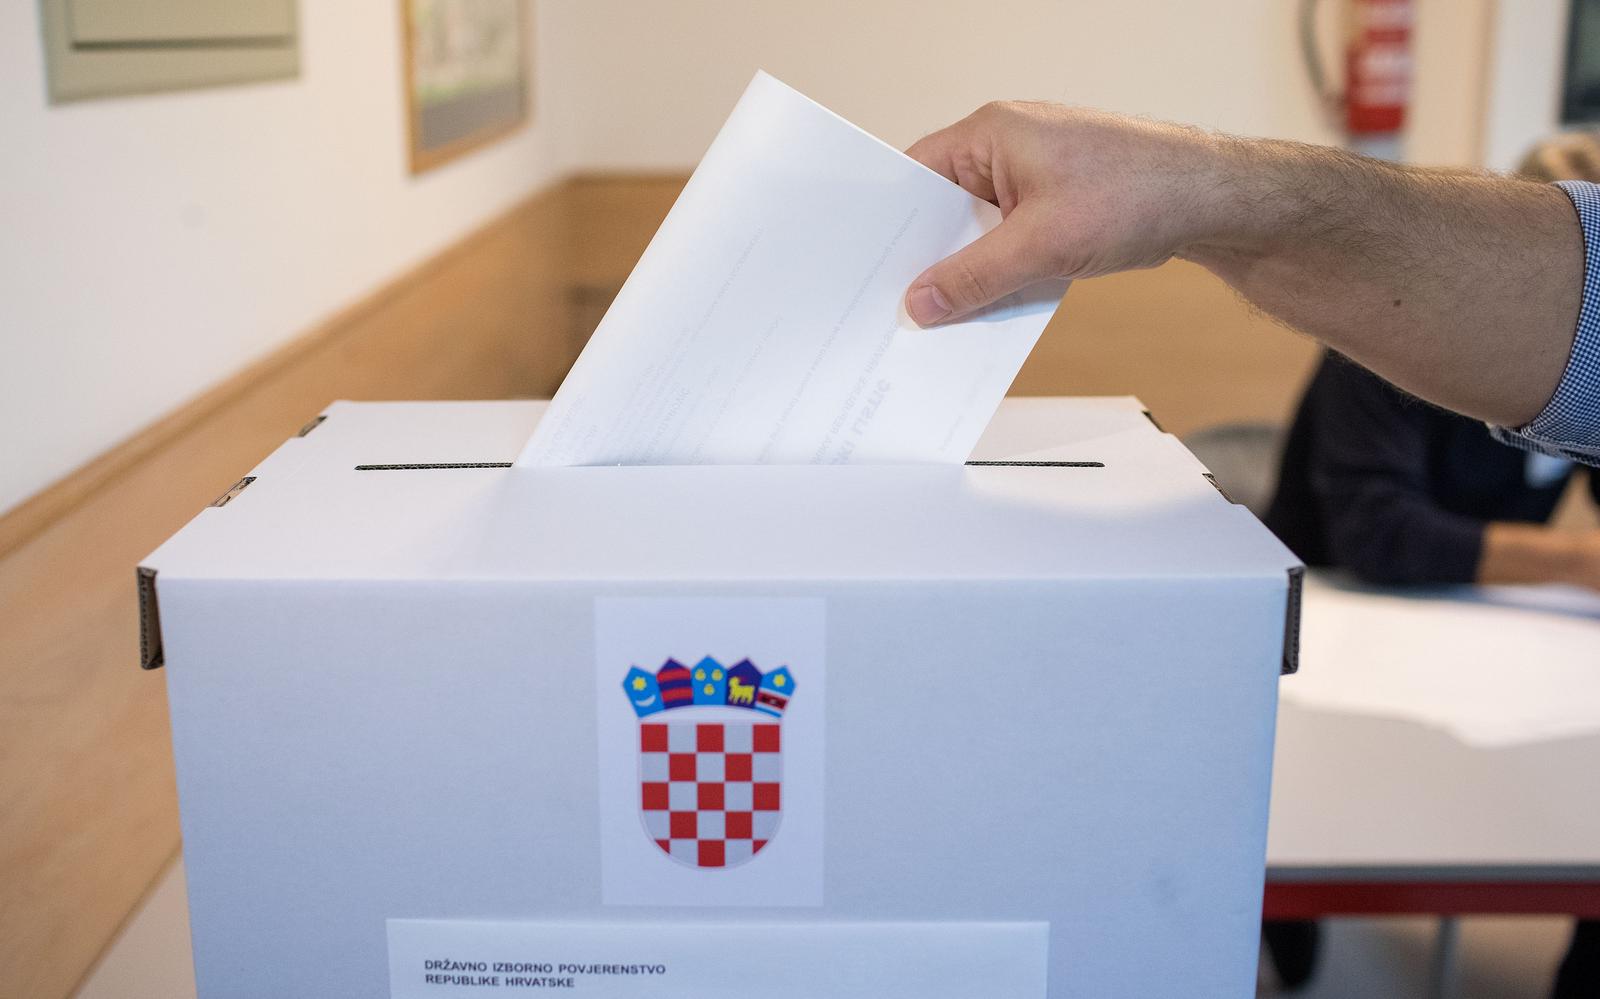 22.12.2019., Zagreb - U 7 sati ujutro otvorila su se biracka mjesta za izbor predsjednika Republike Hrvatske. Photo: Igor Kralj/PIXSELL